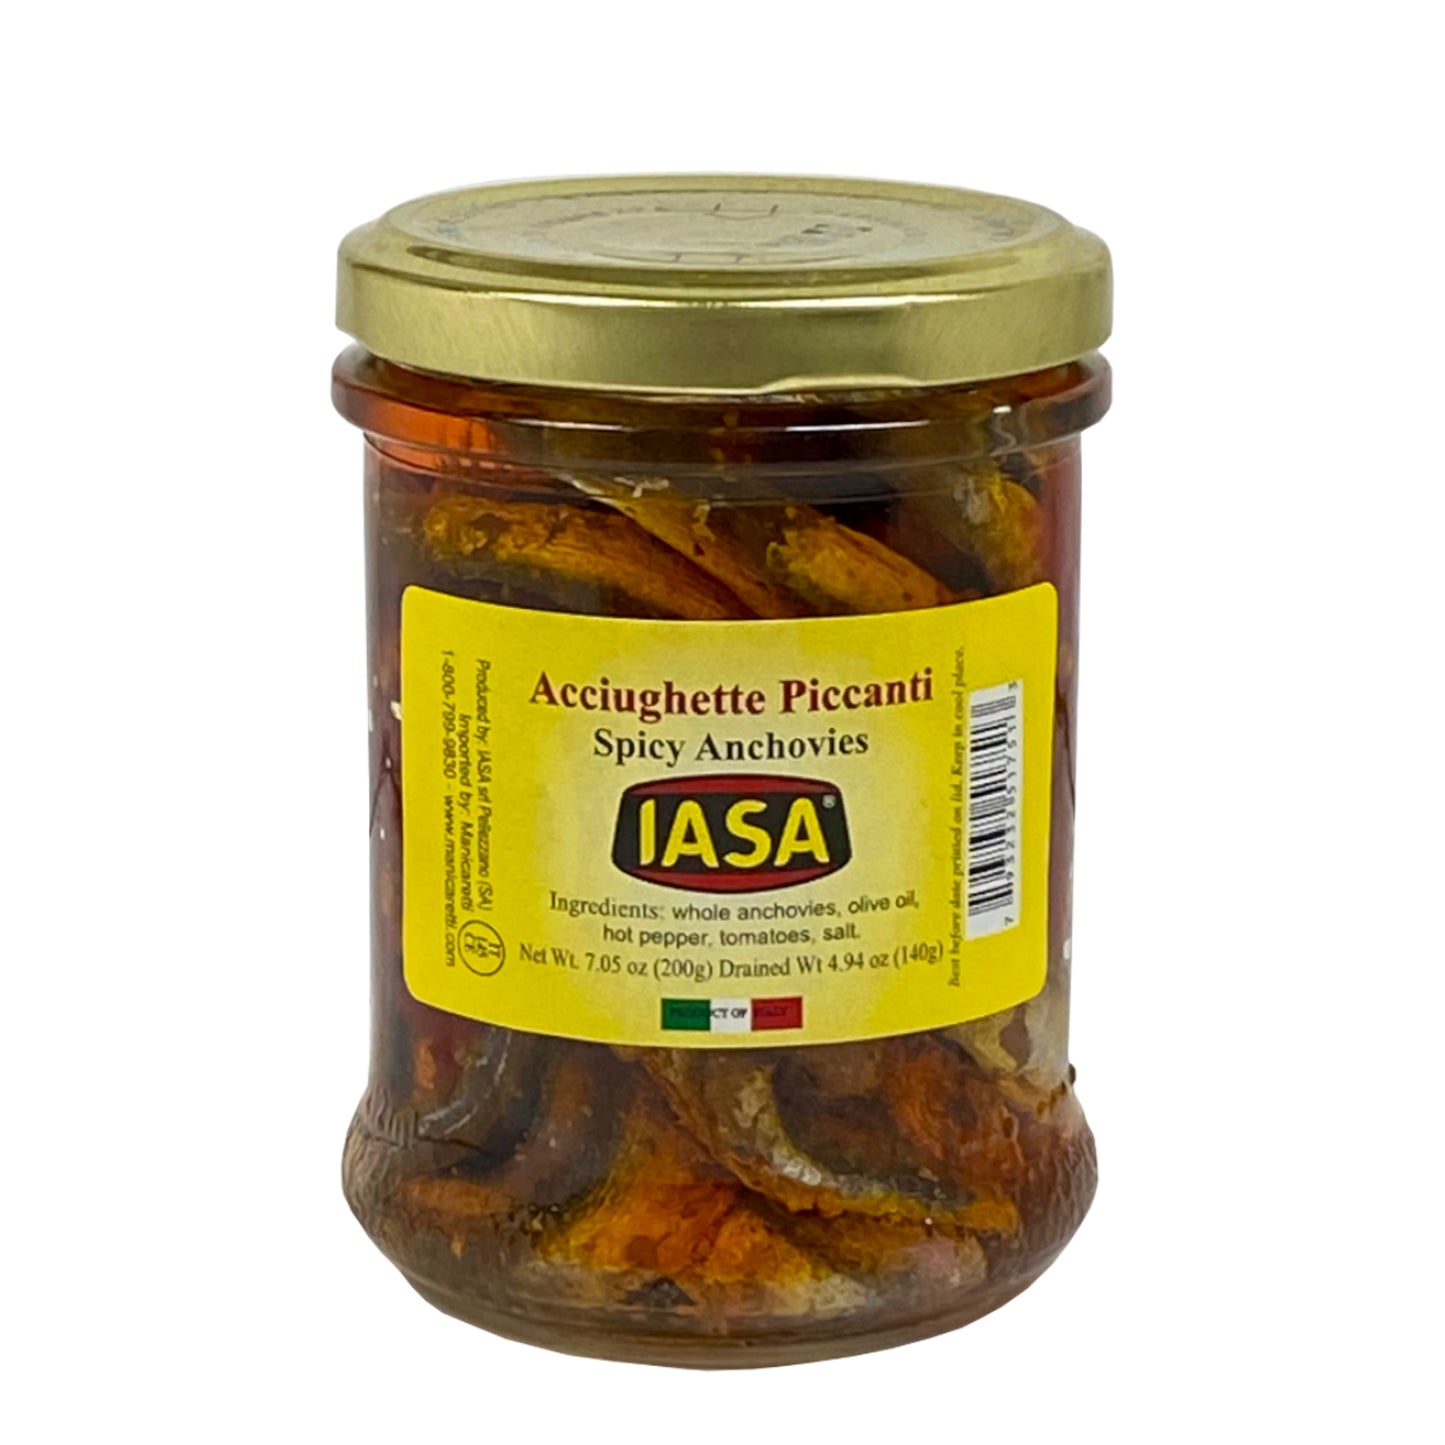 Acciughette Piccanti - Spicy Anchovies (IASA) CLT-002